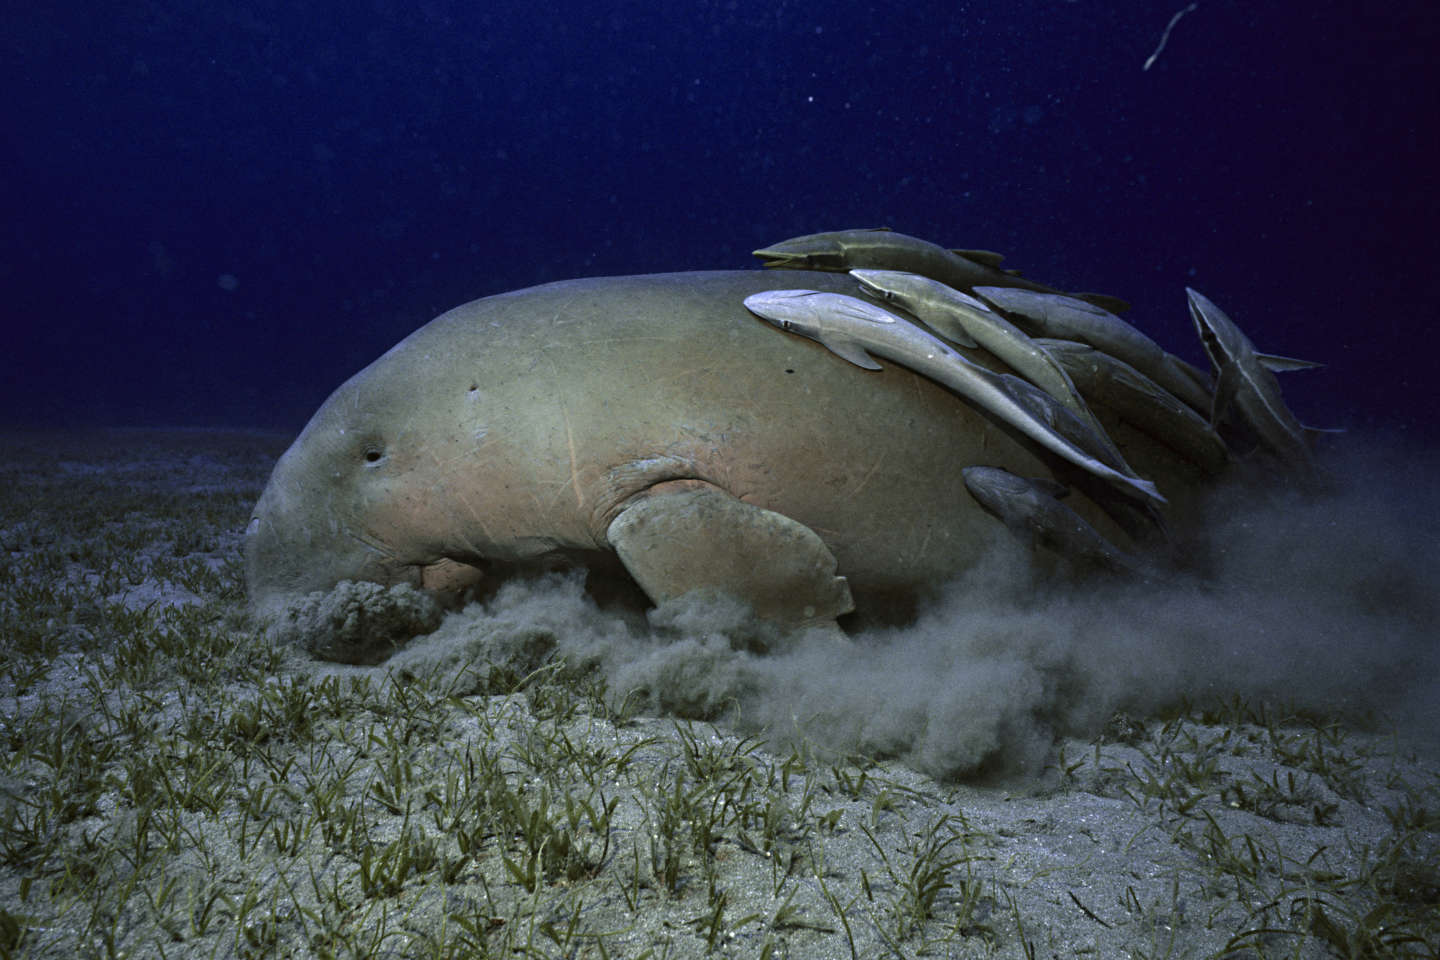 Dugongs, corail cierge, coquillages d’ormeaux… Des nouvelles espèces marines menacées d’extinction